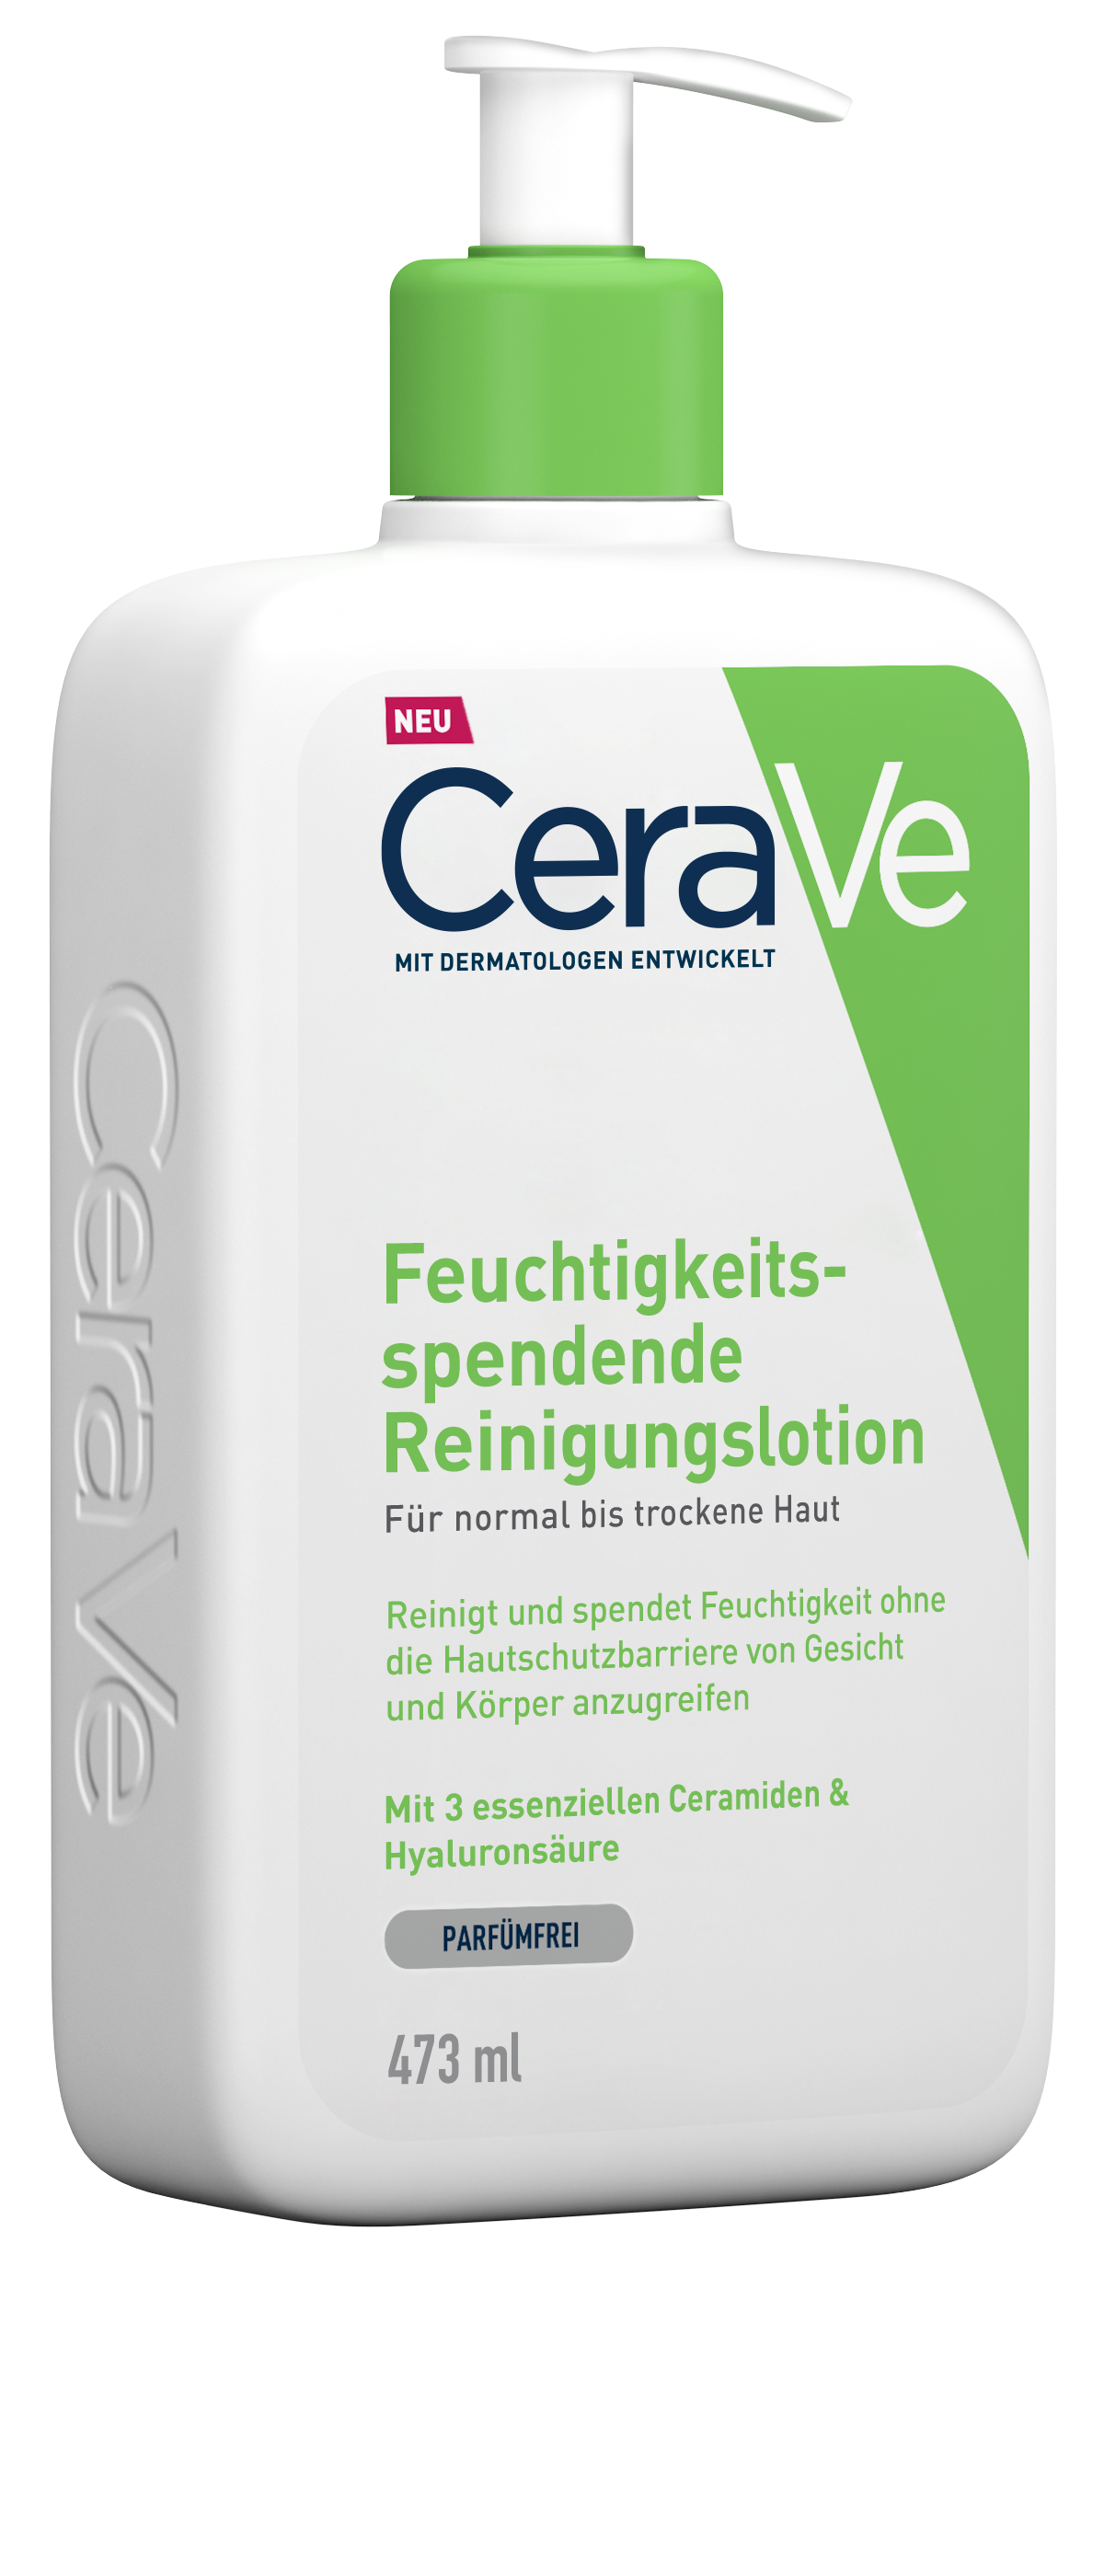 CeraVe Feuchtigkeitsspendende Reinigungslotion (473 ml)